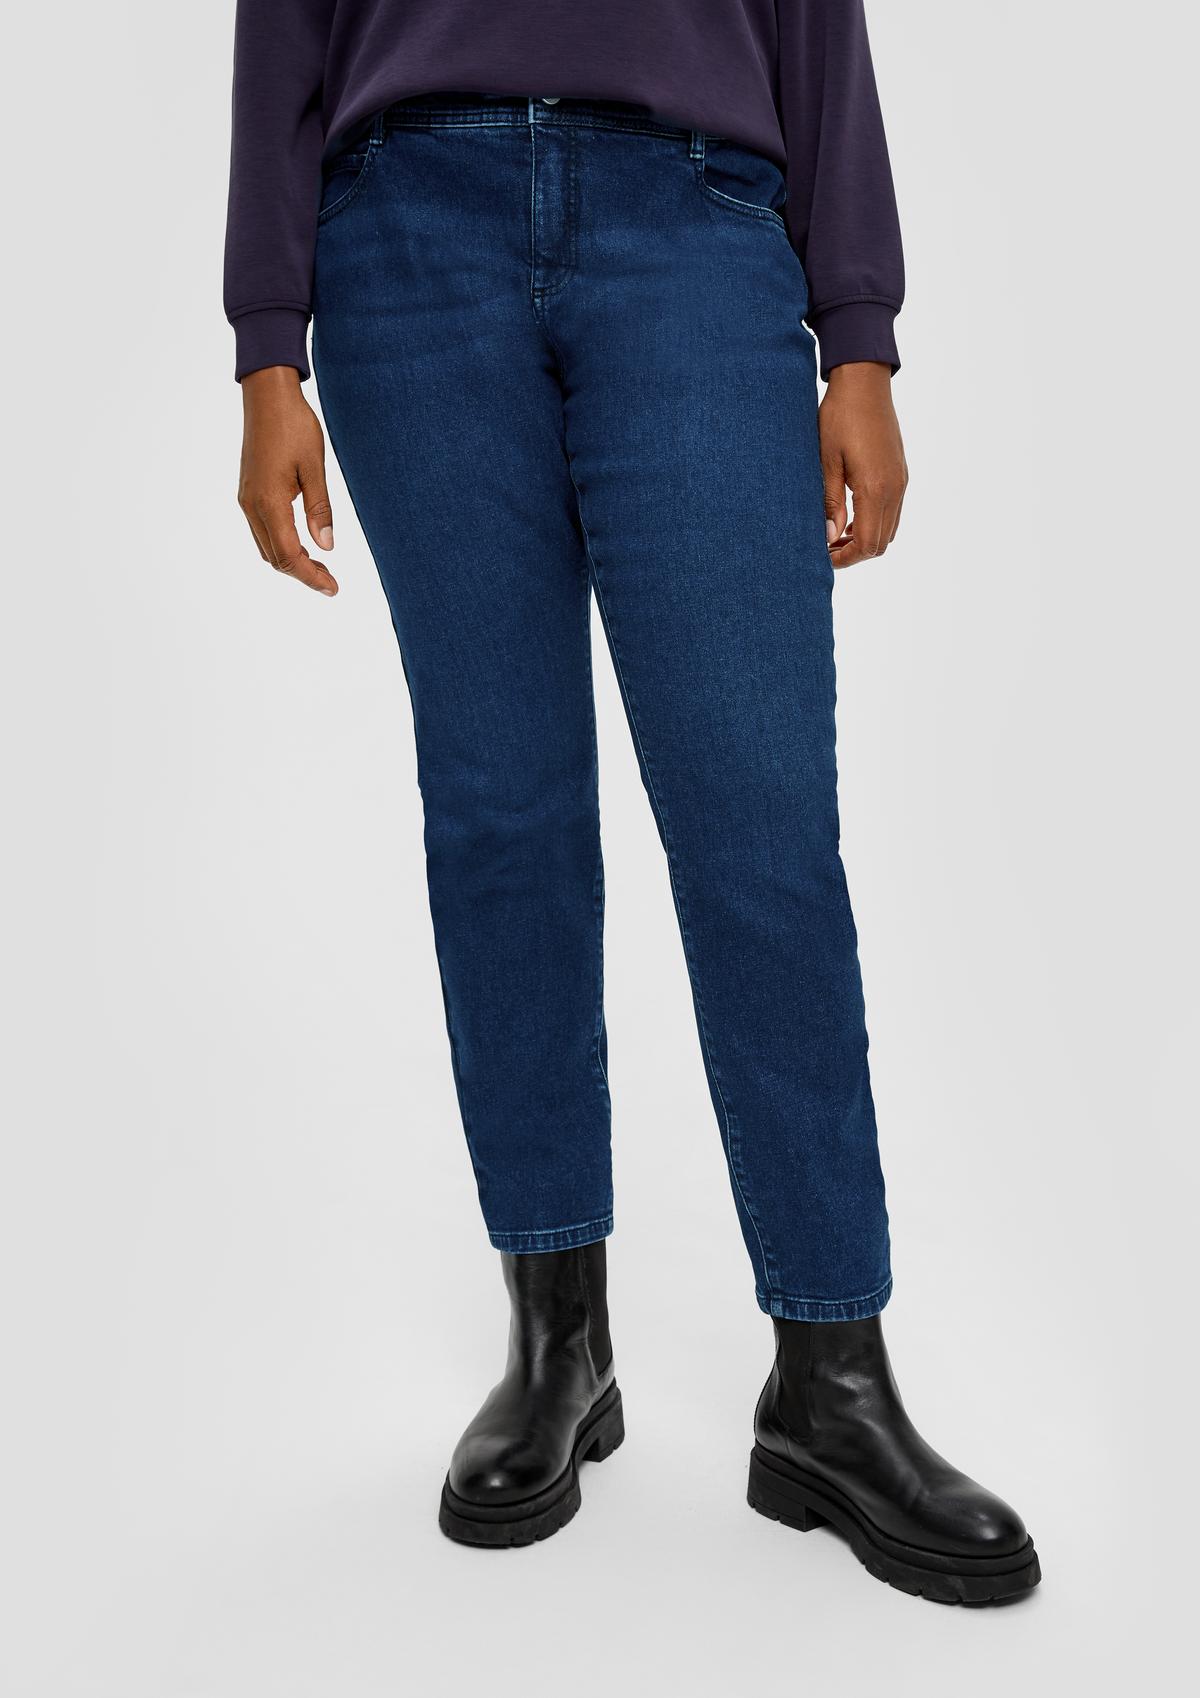 skinny / five-pocket design rise / leg s. skinny - mid / / fit Oliver blue Jeans |